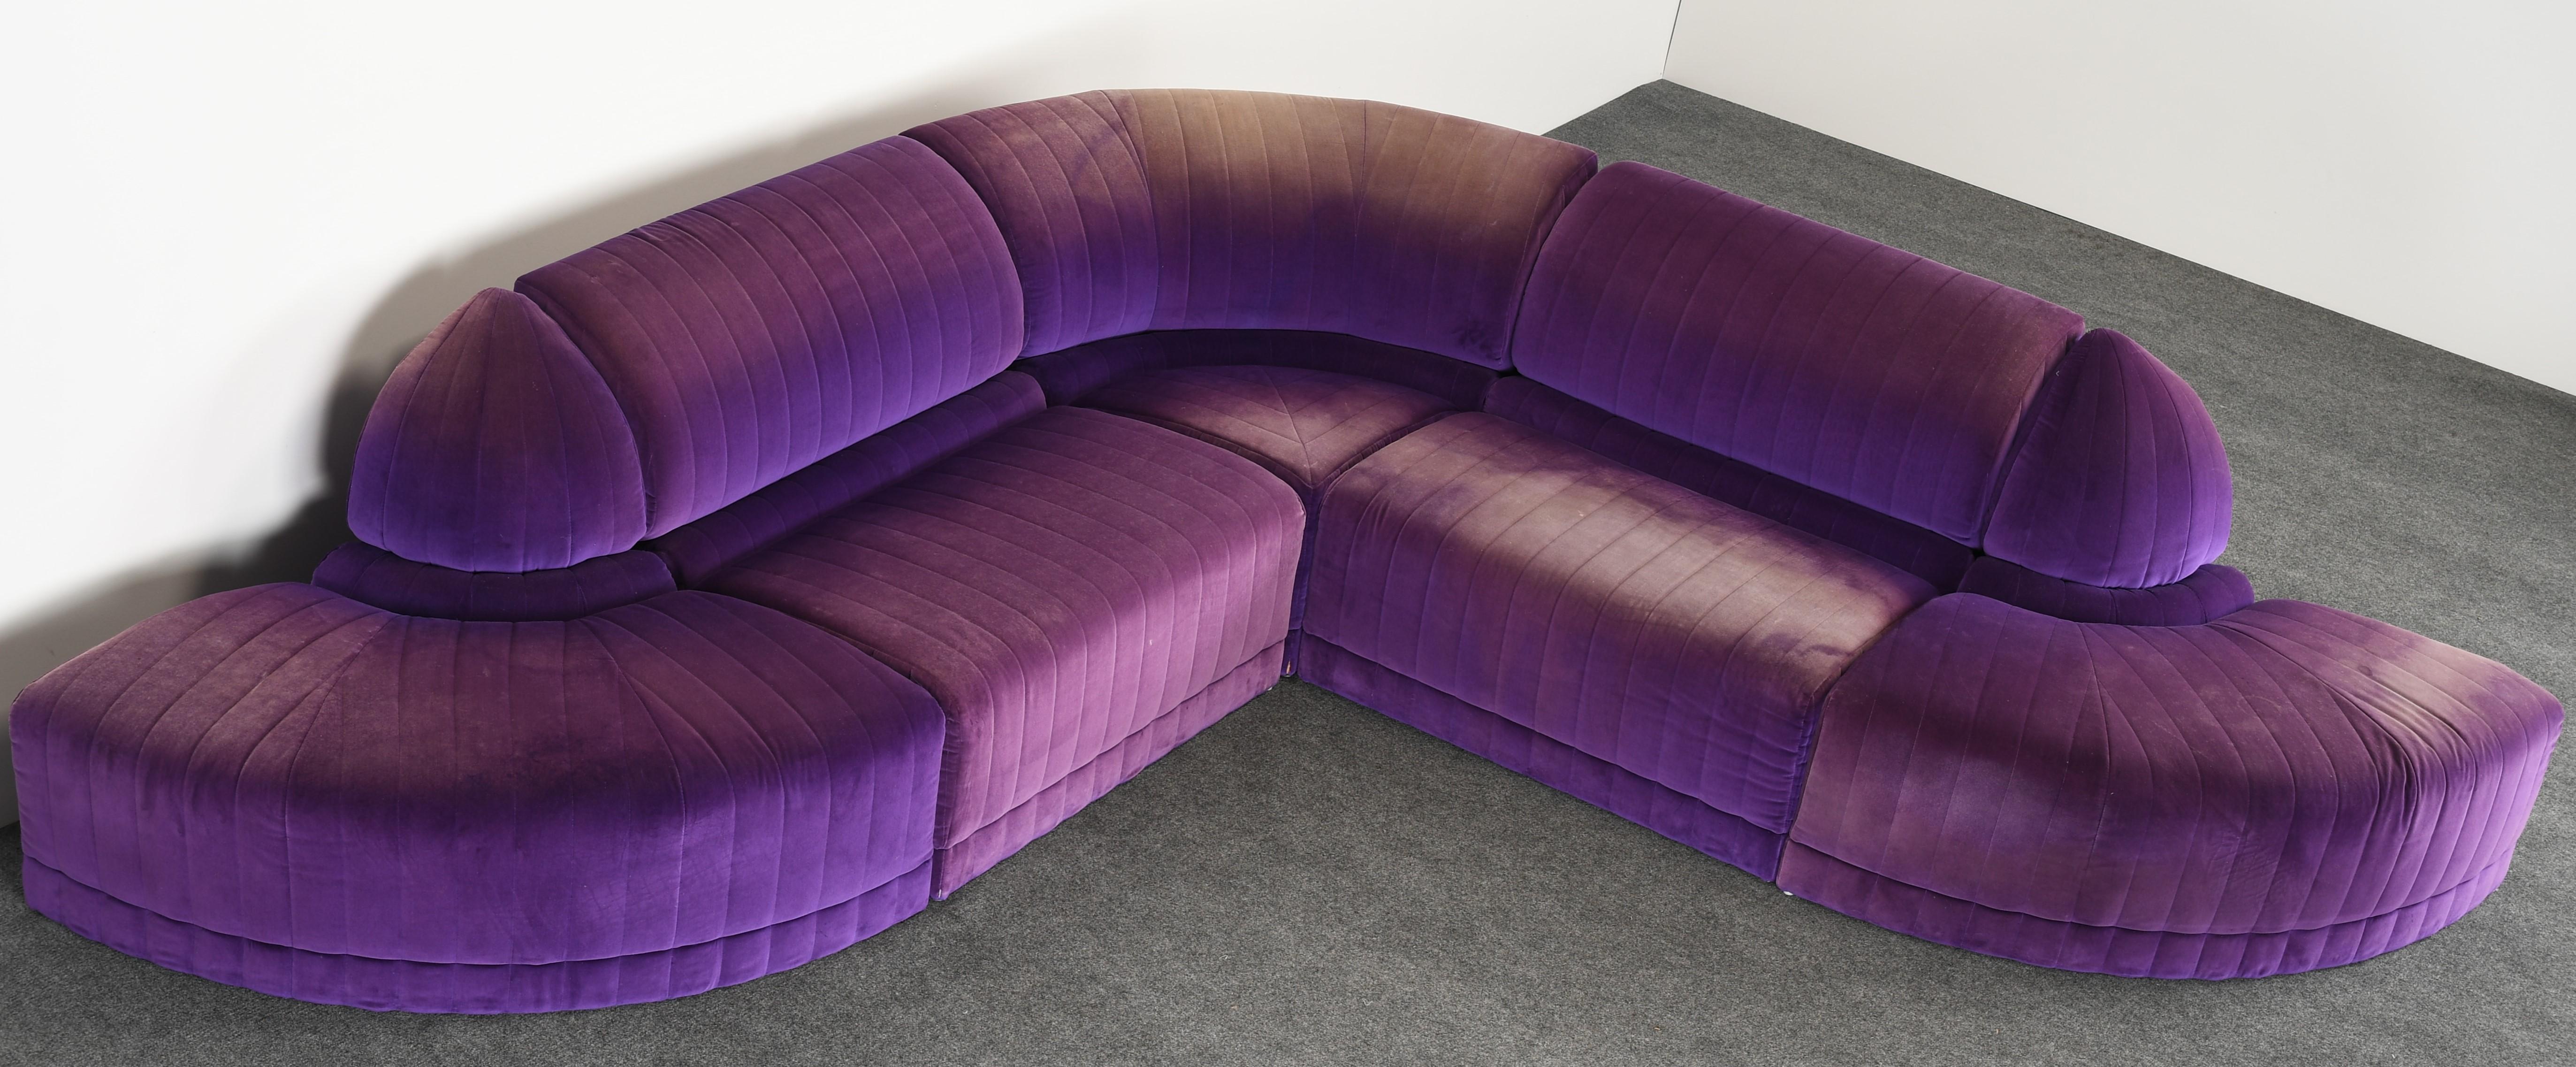 roche bobois couch